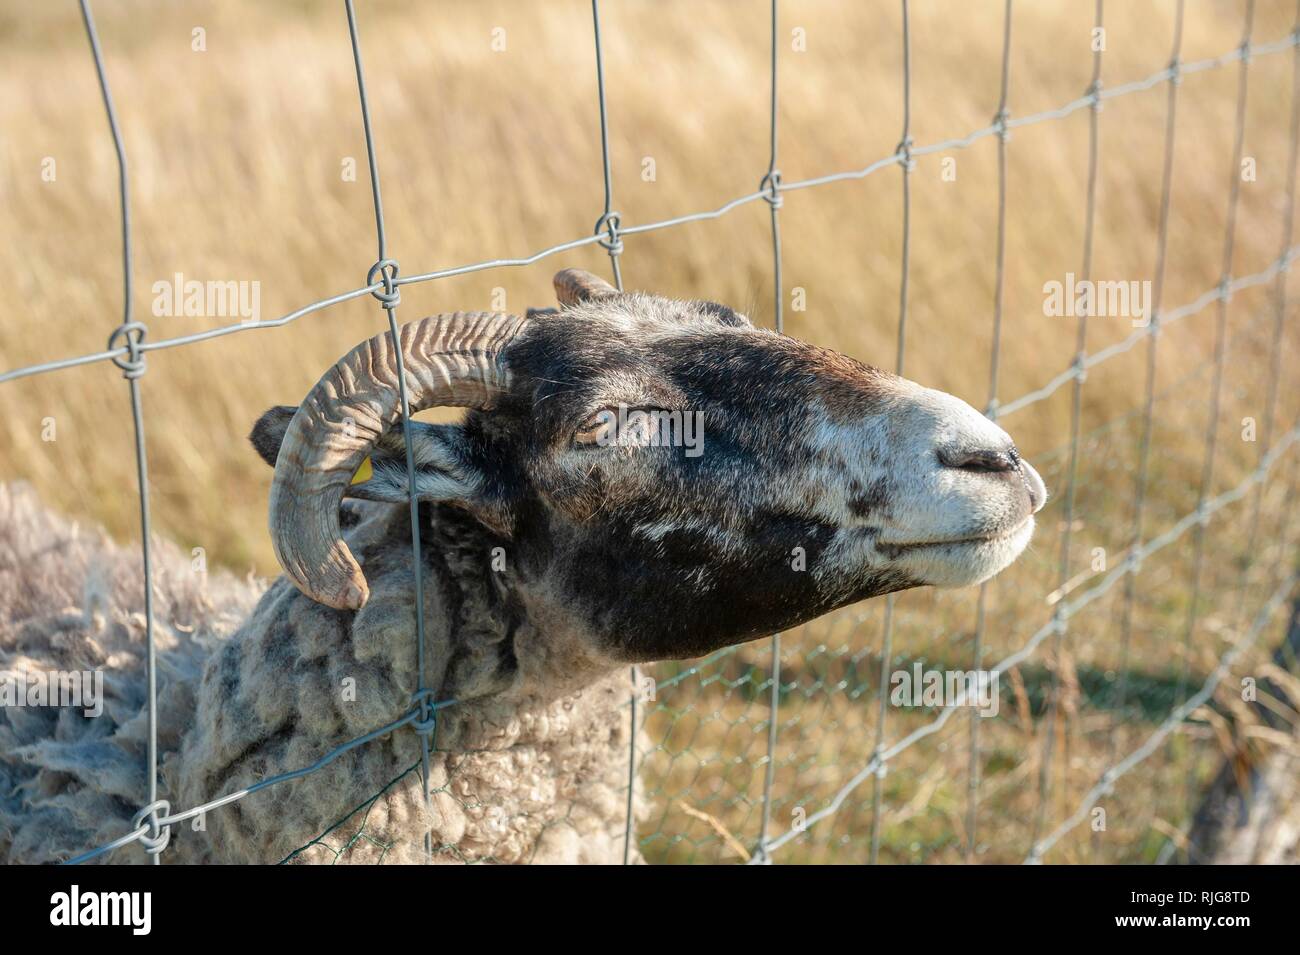 Schaf am schaut durch Drahtzaun, Putgarten, Rügen, Mecklenburg-Vorpommern, Germany Stock Photo